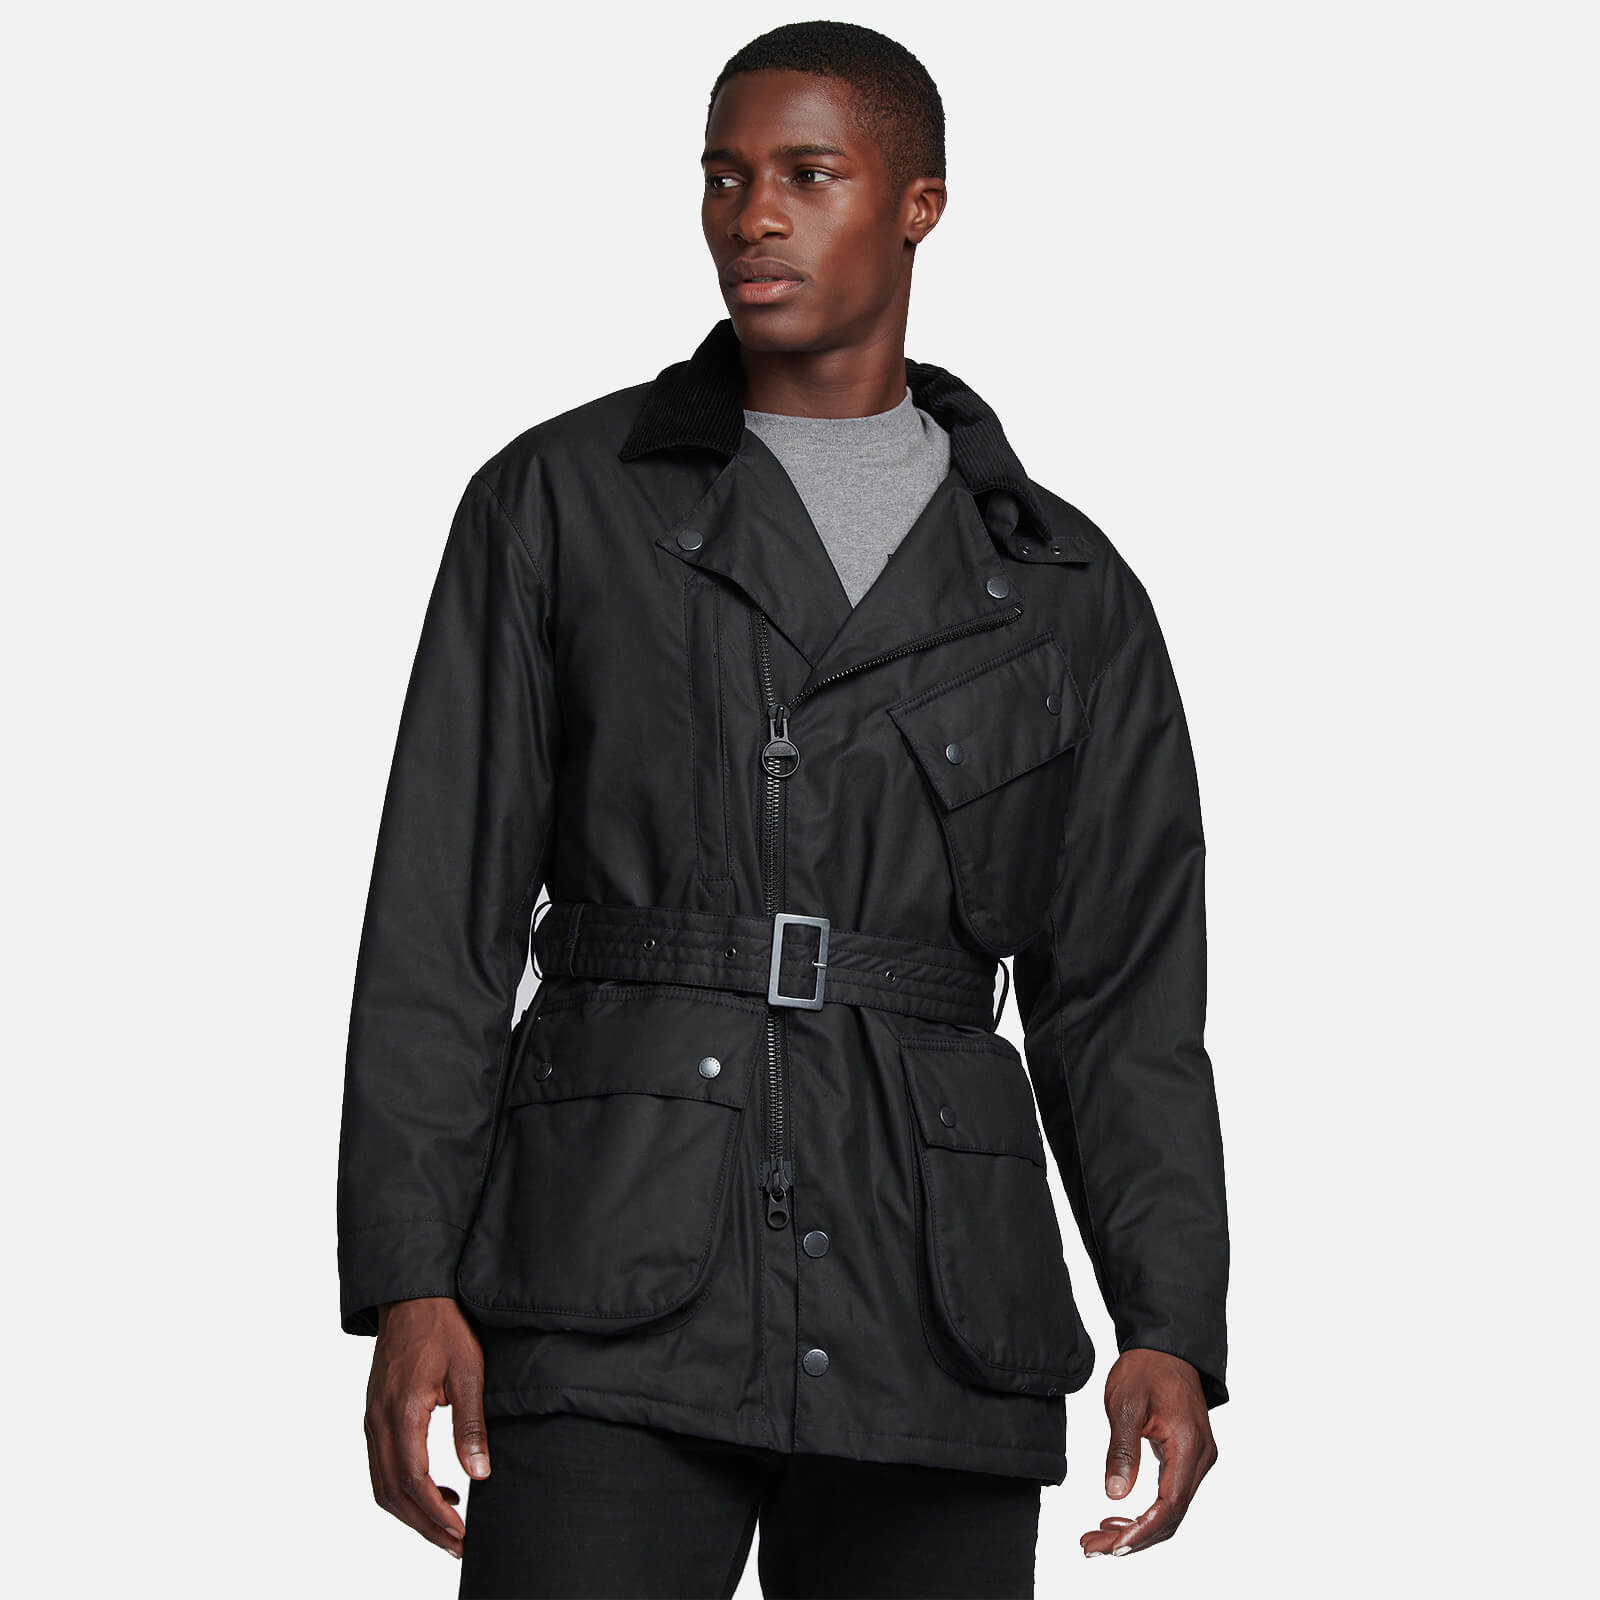 Barbour Heritage X Engineered Garments Men's Lenox Wax Jacket - Black - L